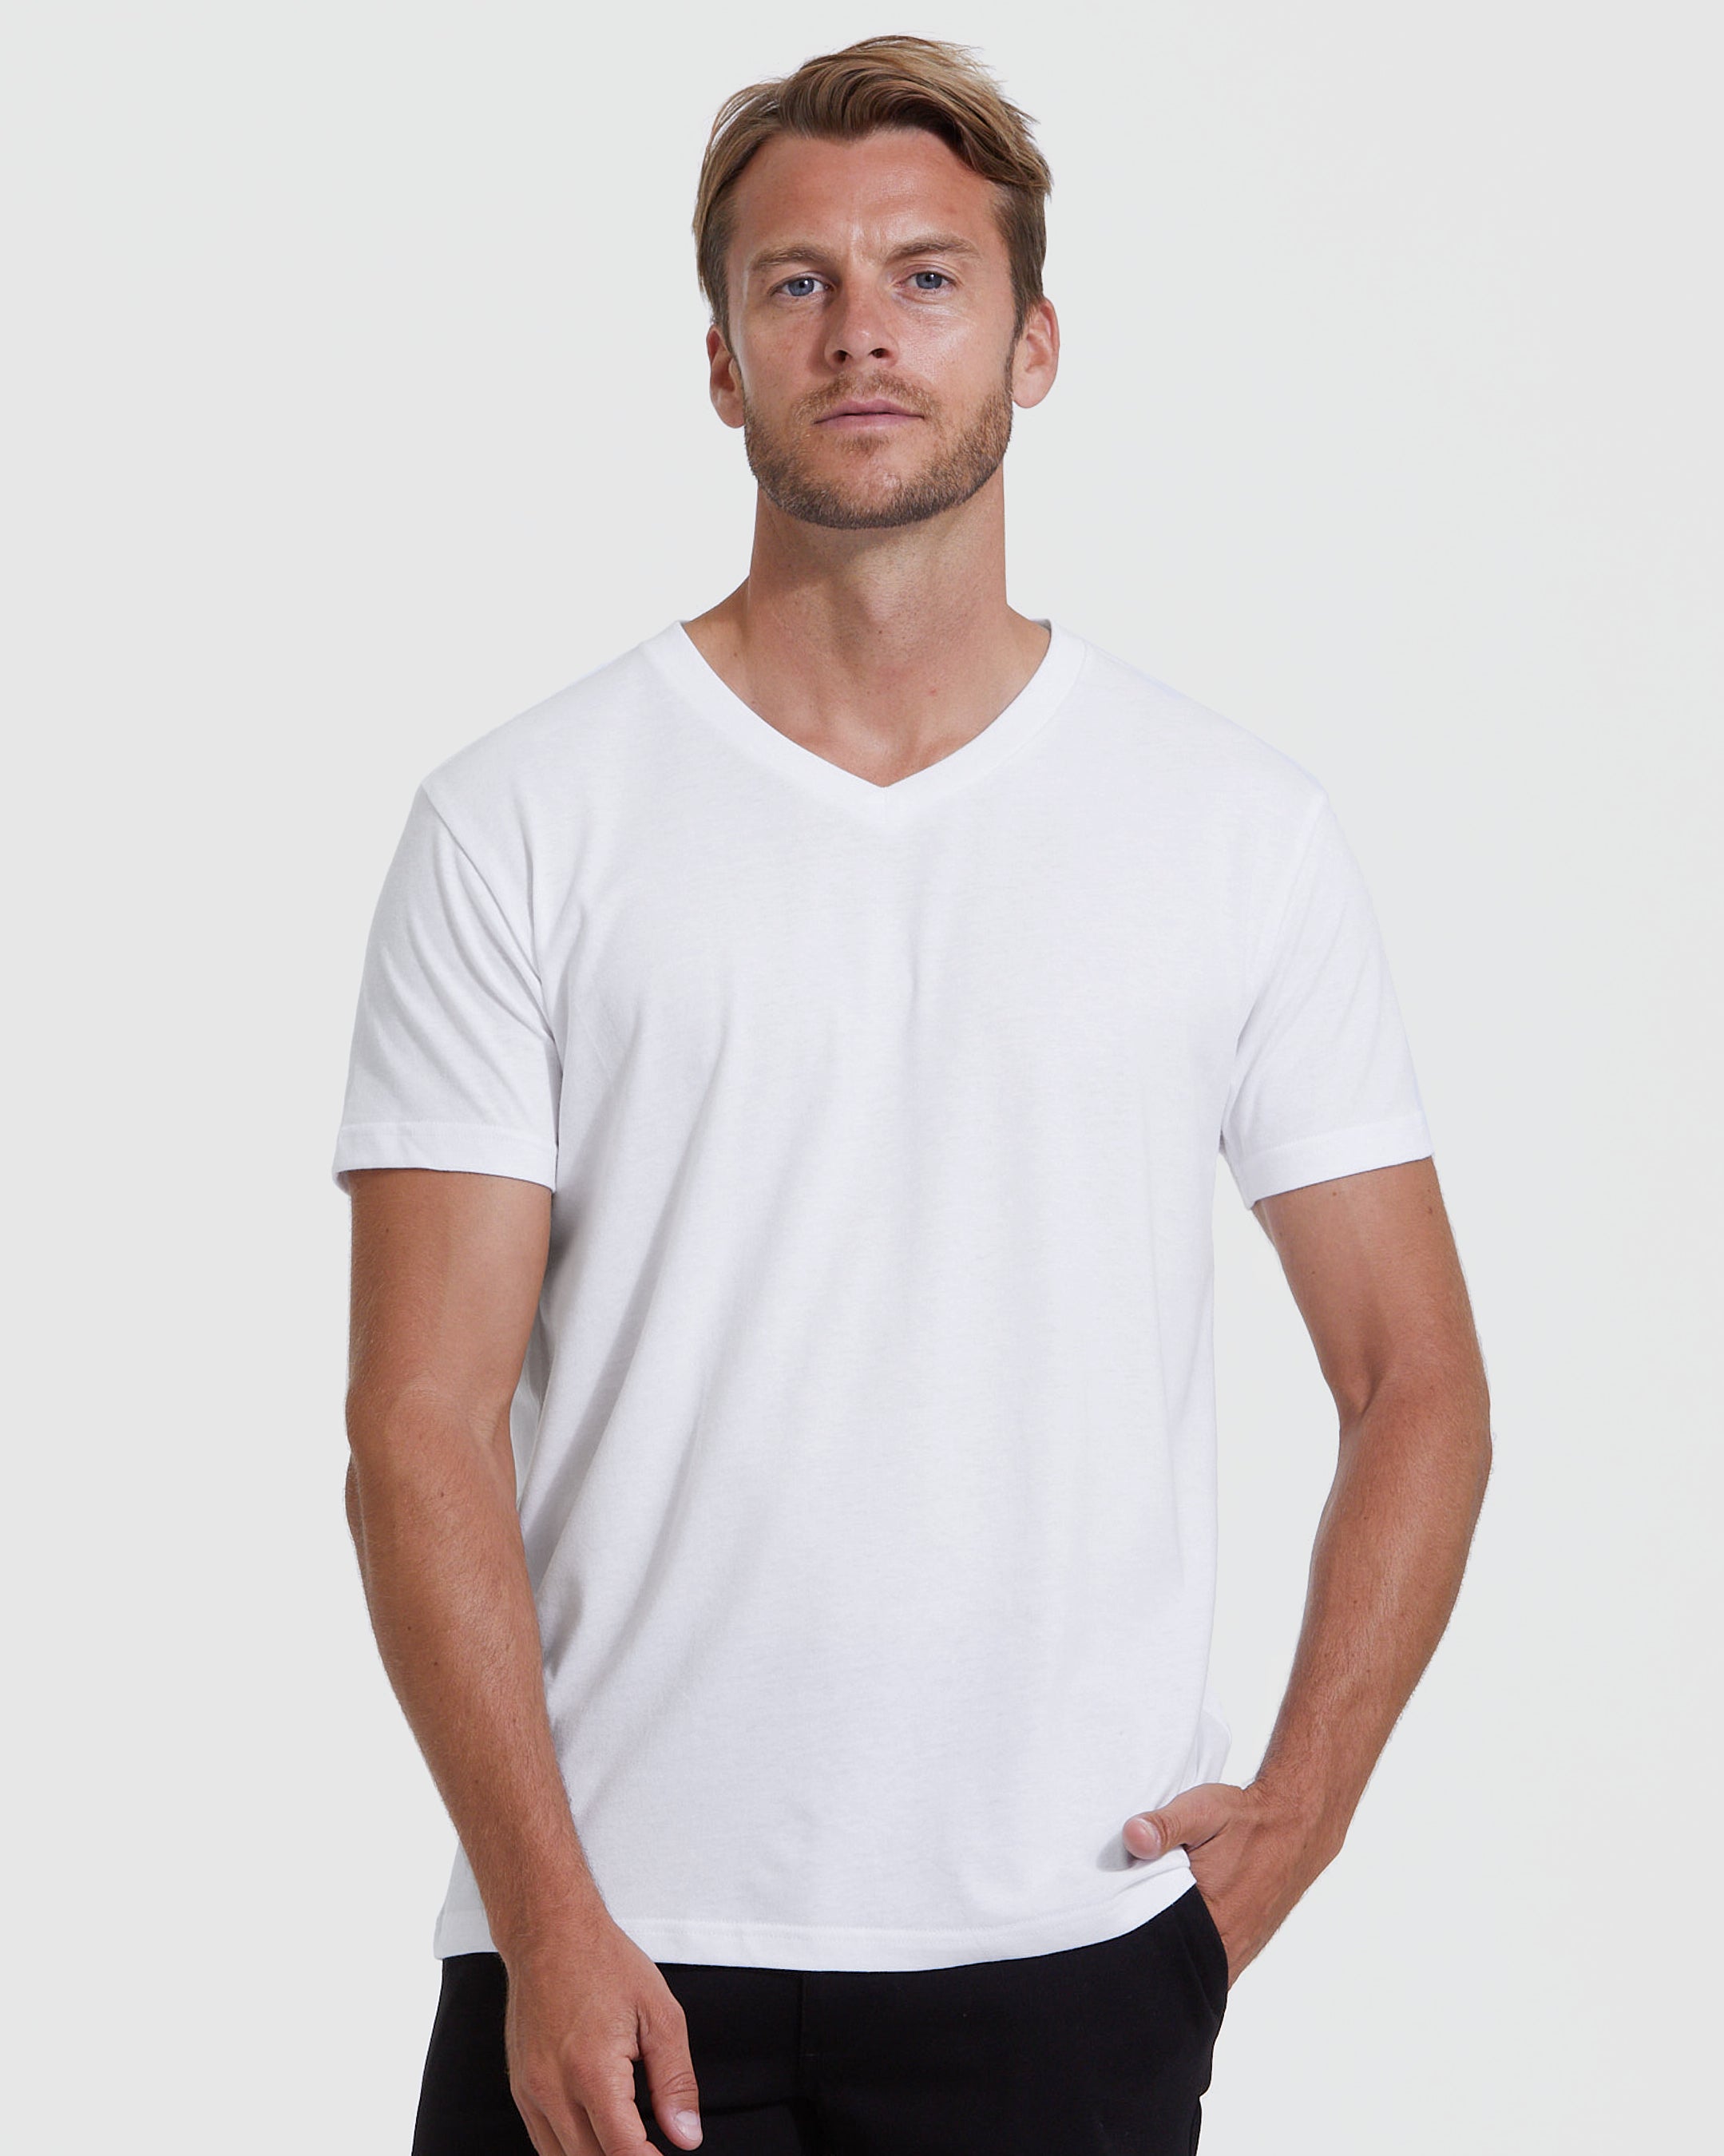 White V-Neck T-Shirt | Men's White V-Neck Shirt | True Classic